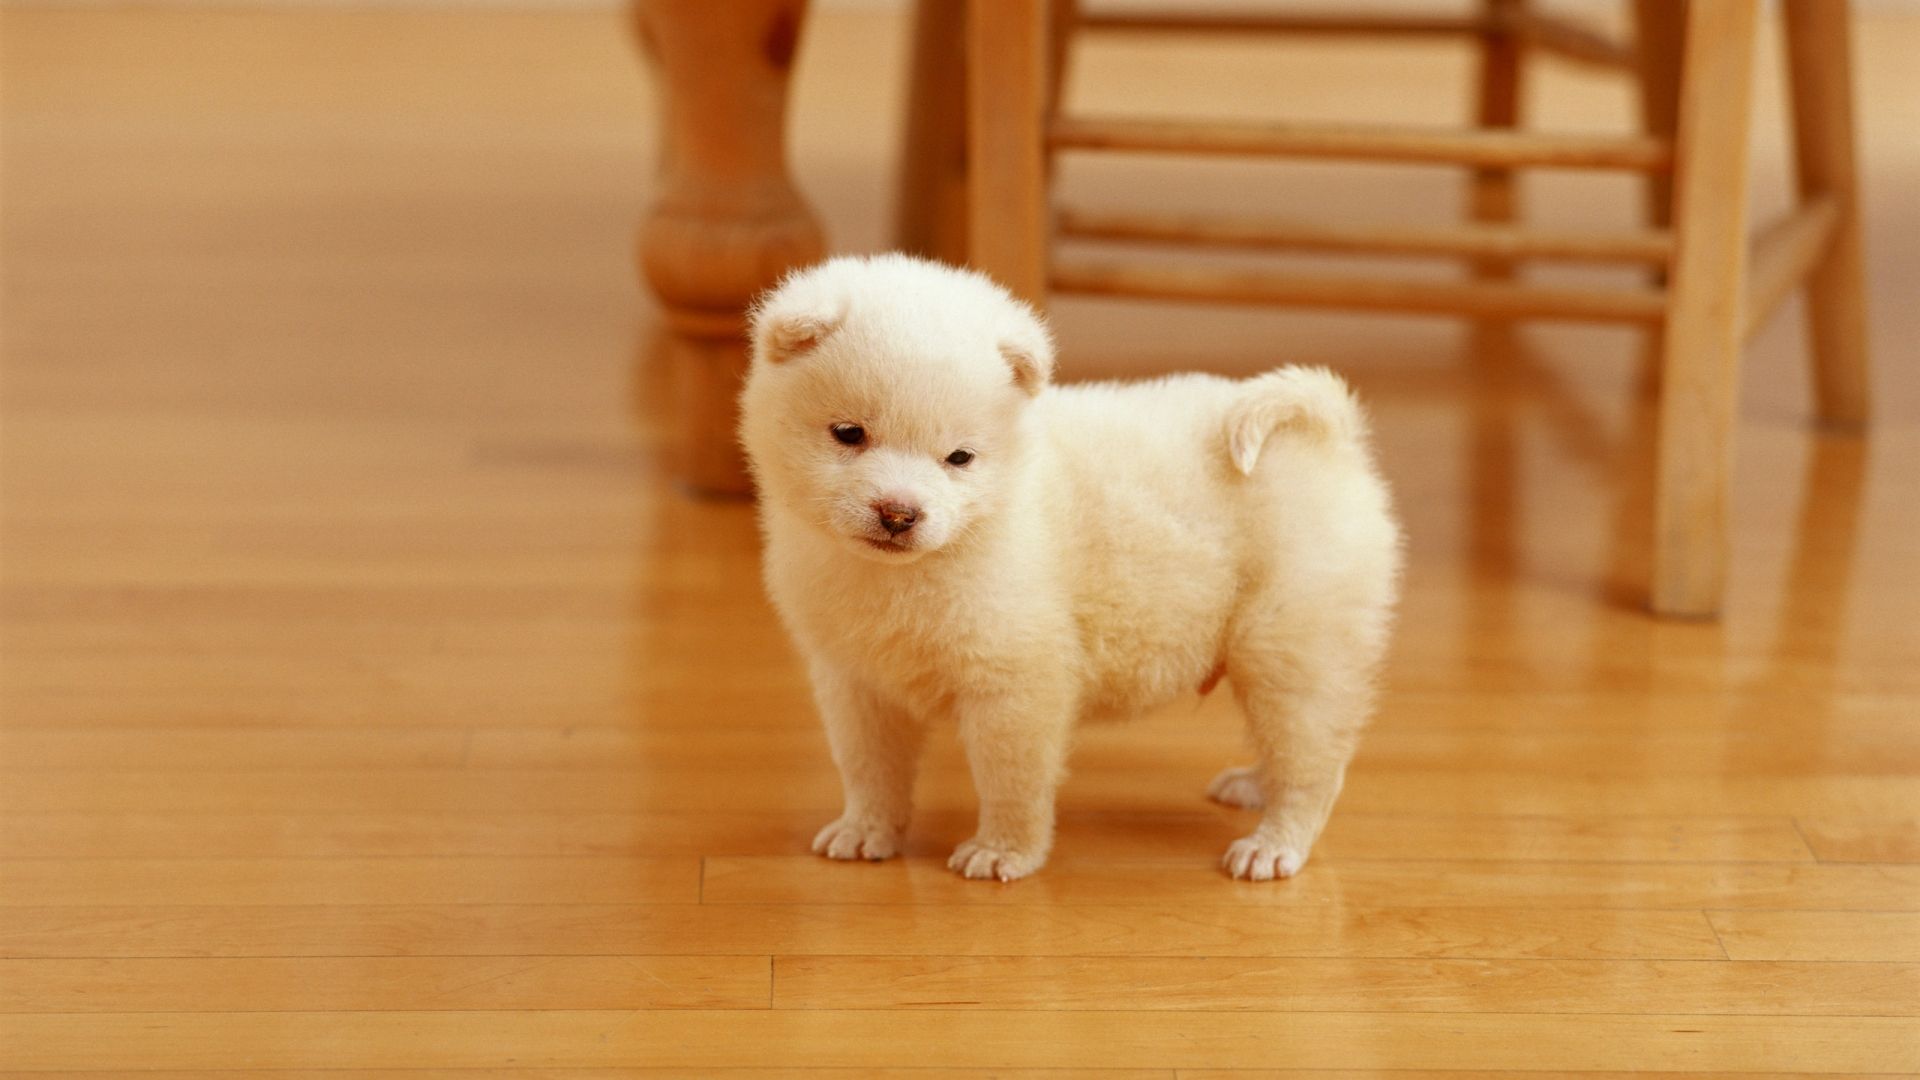 Lovely white puppy on floor